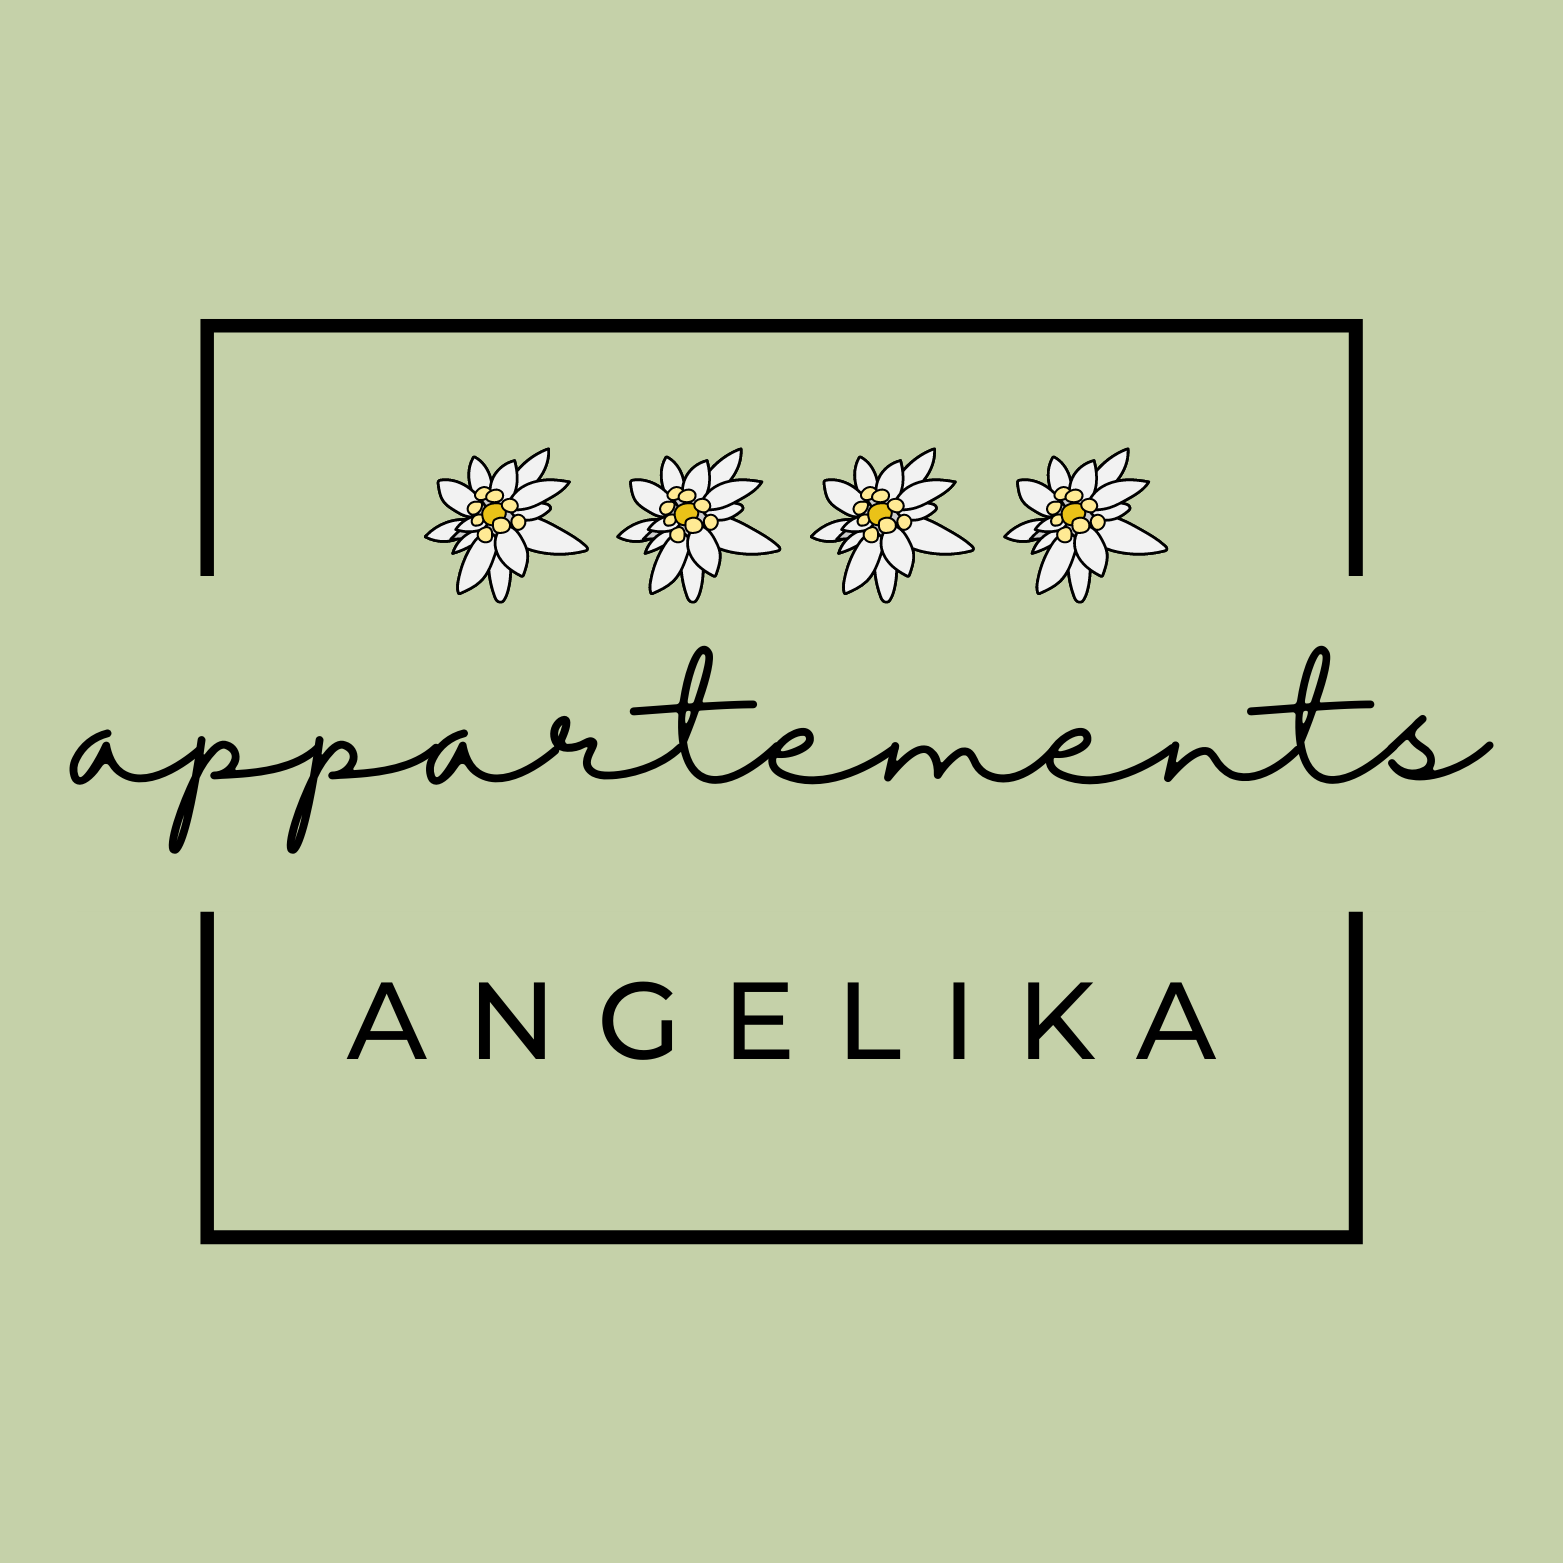  Appartements Angelika Activities